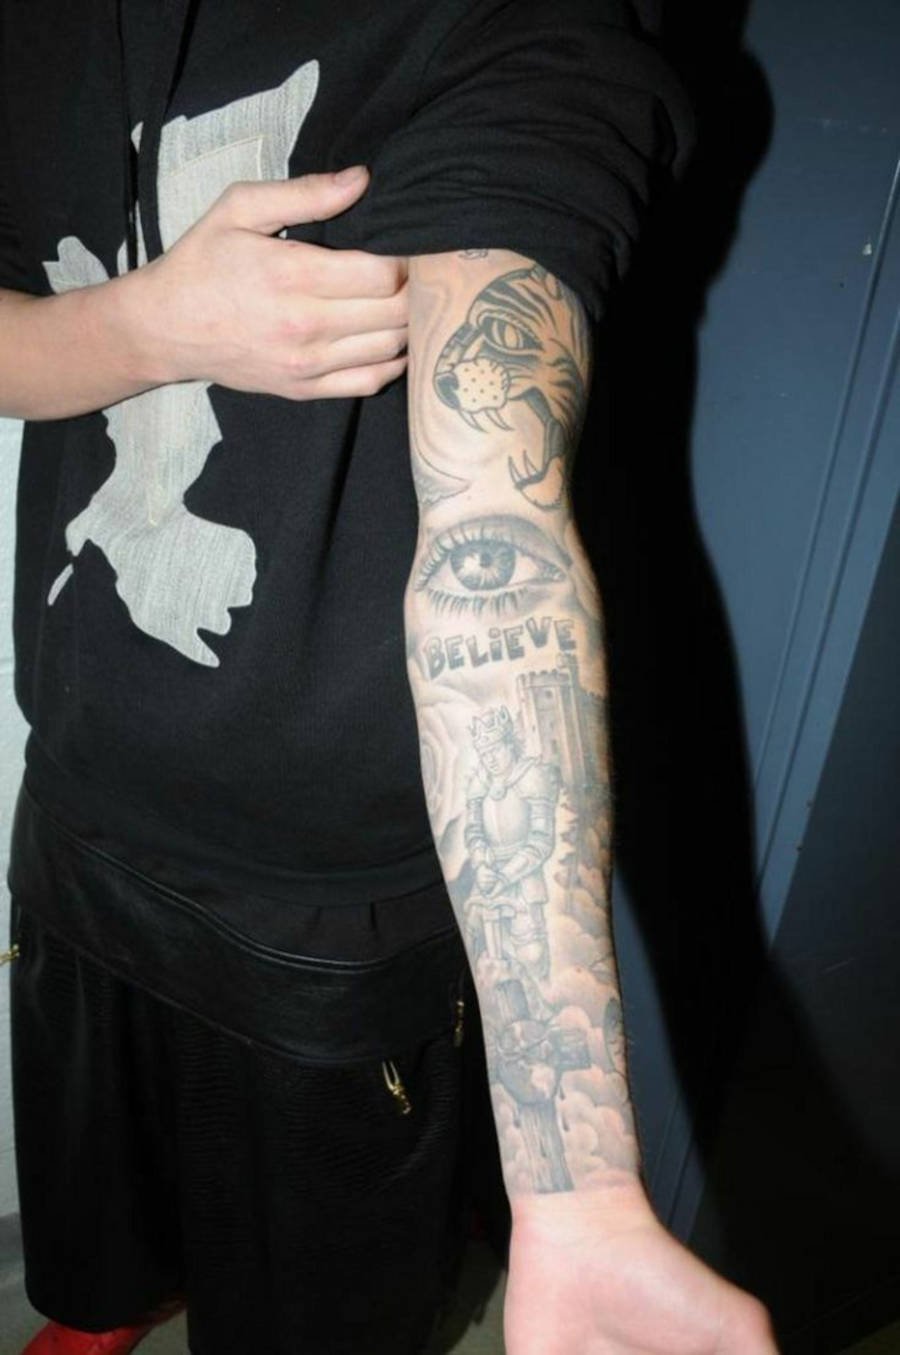 Foto do braço de Justin Bieber com diversas tatuagens e com destaque a tattoo "believe"